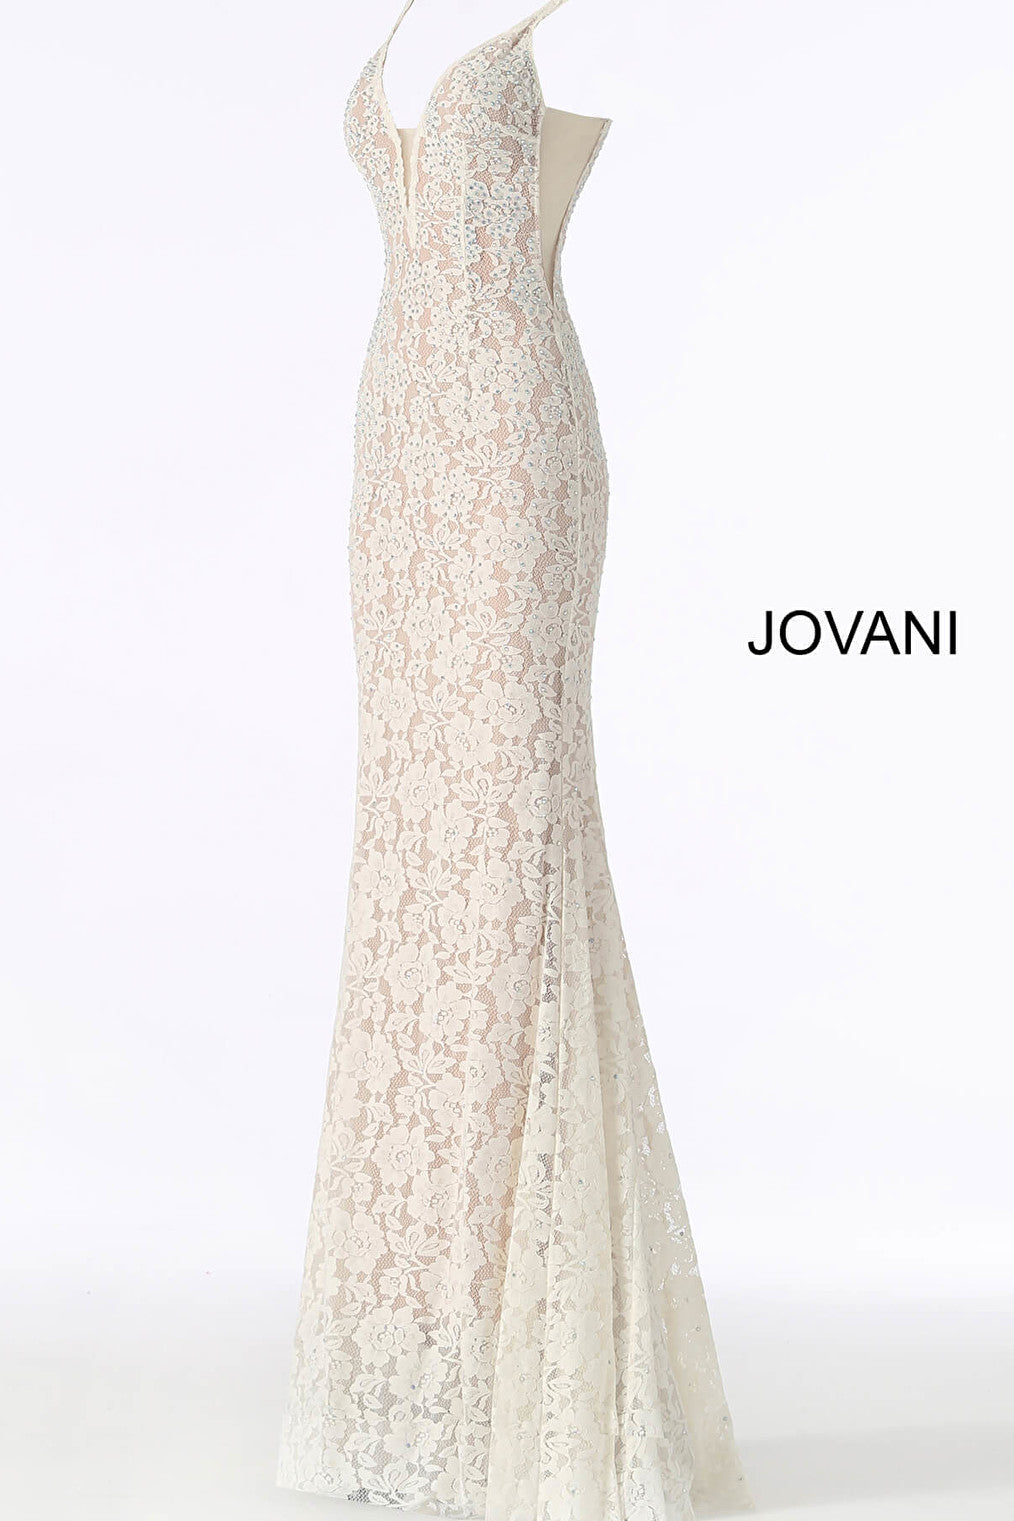 Jovani 48994 white